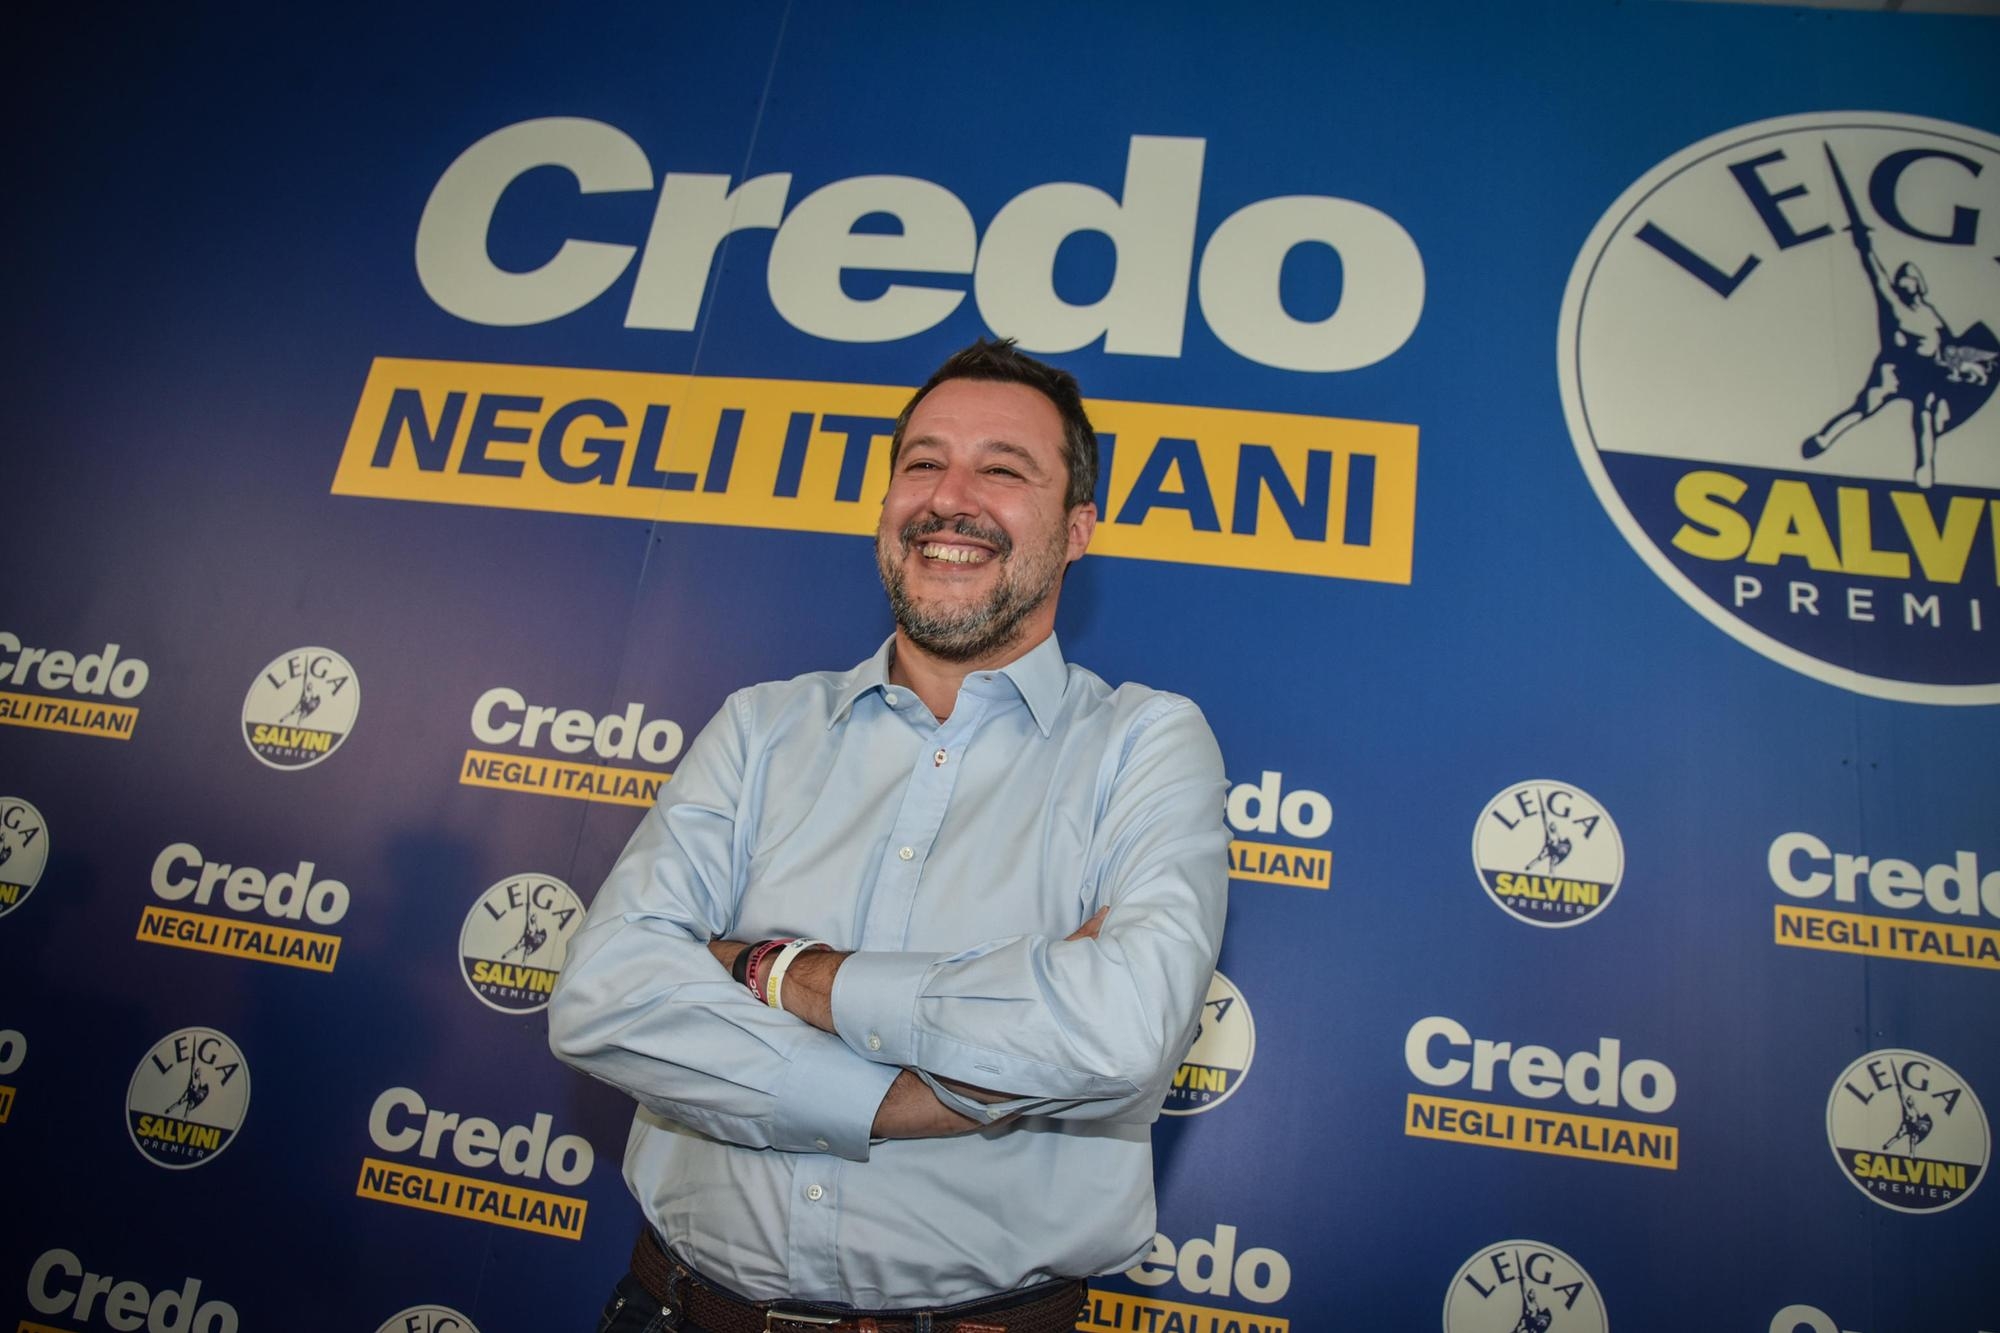 Lega: “La leadership di Salvini non si discute”